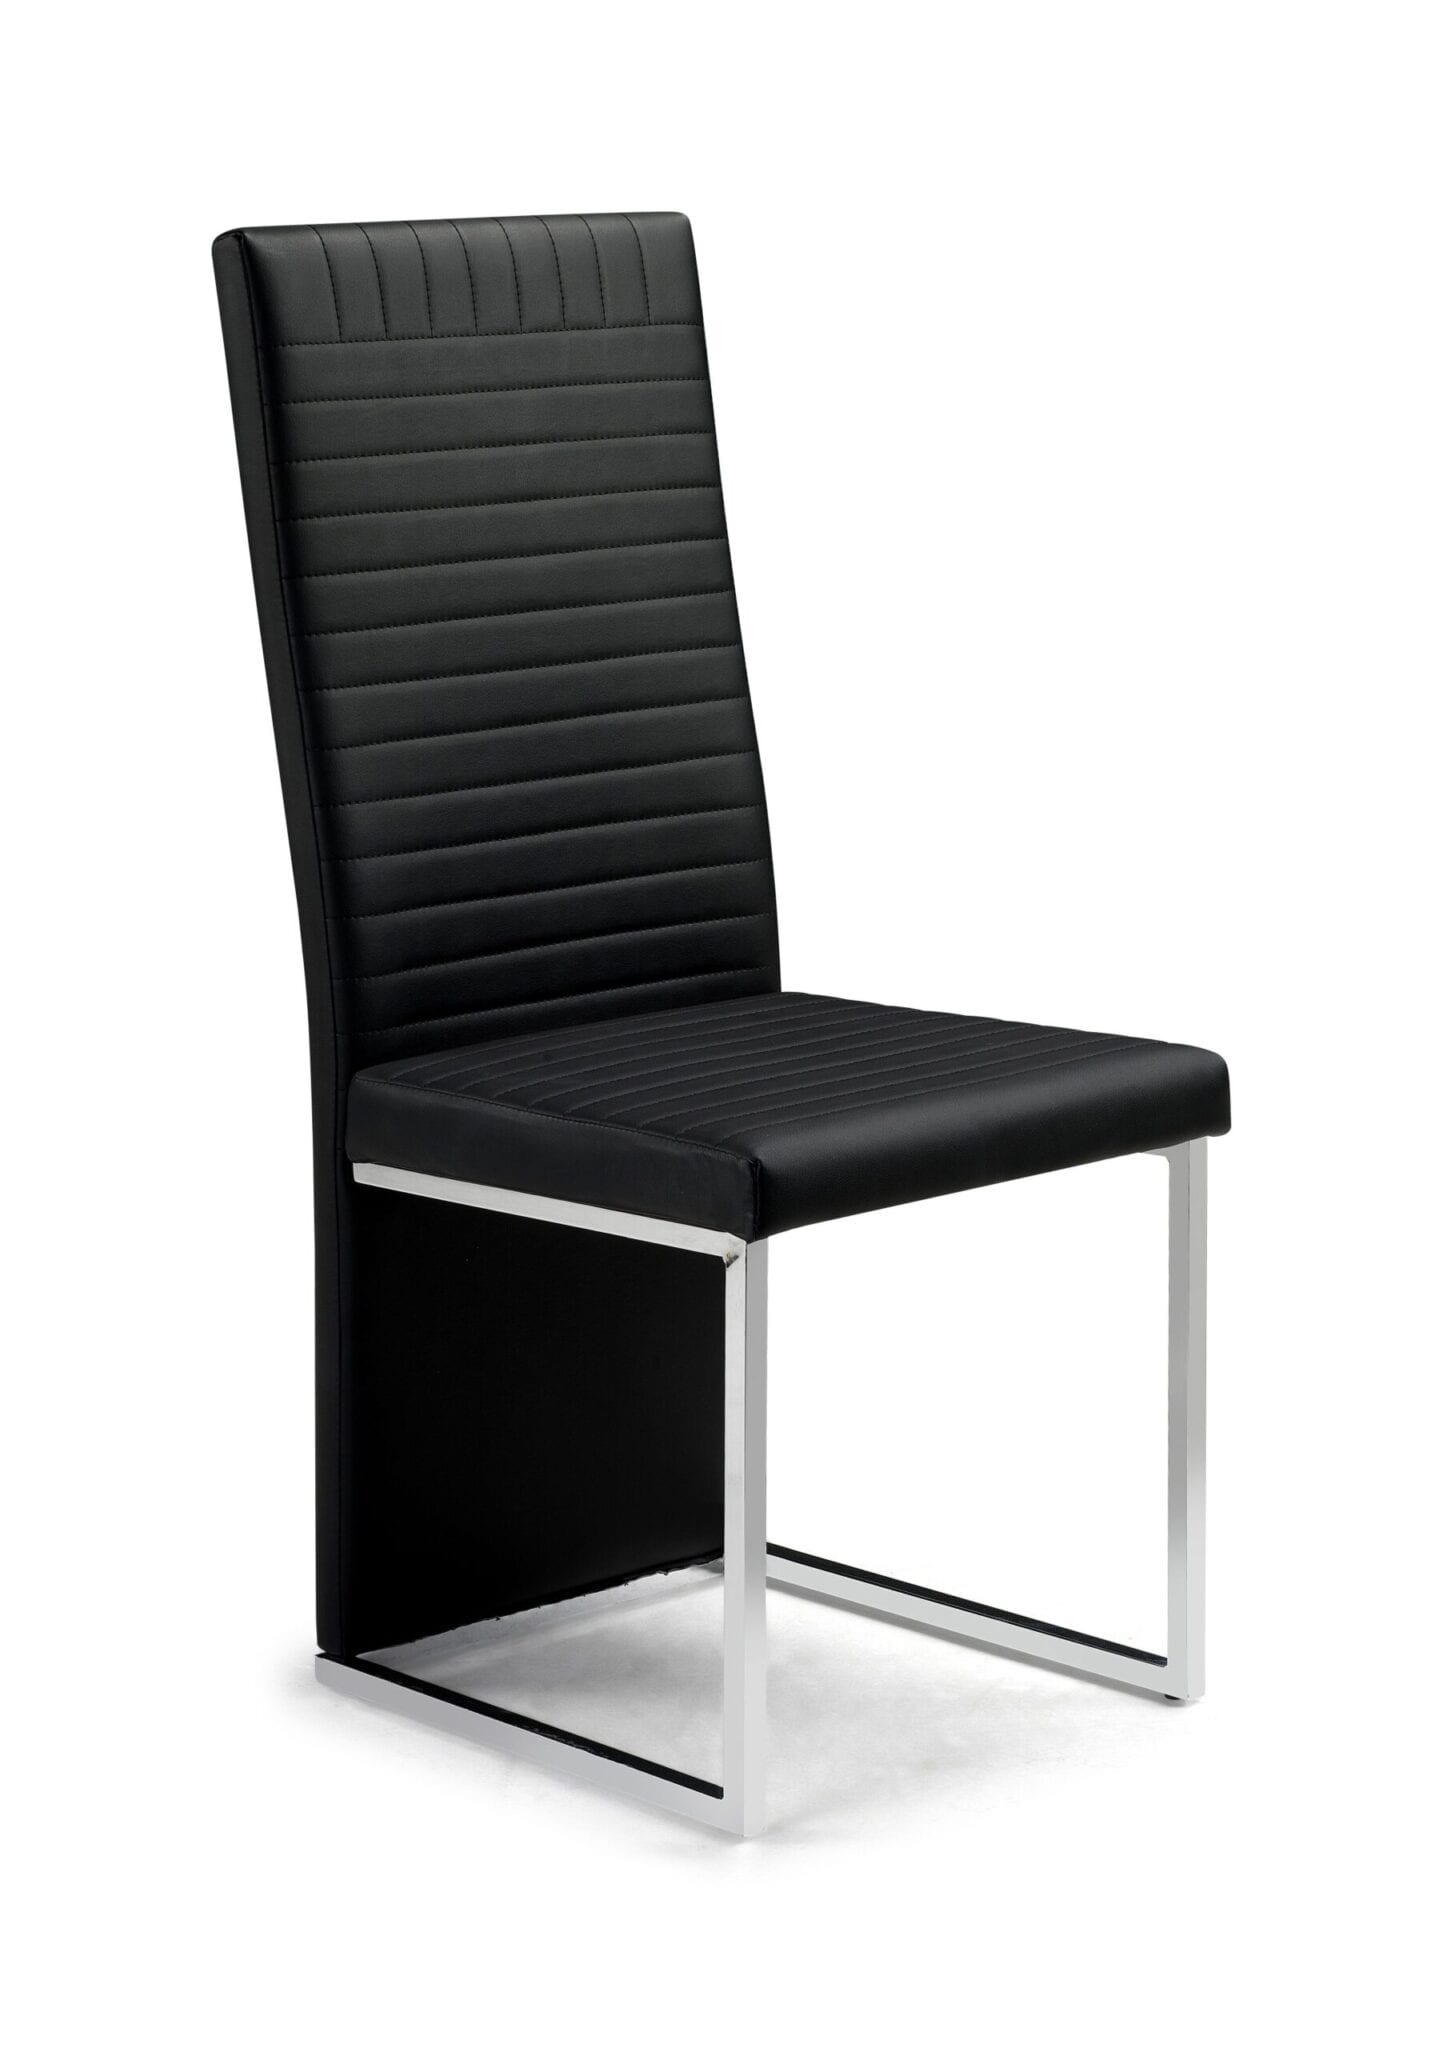 Venti Chair Chrome/Black